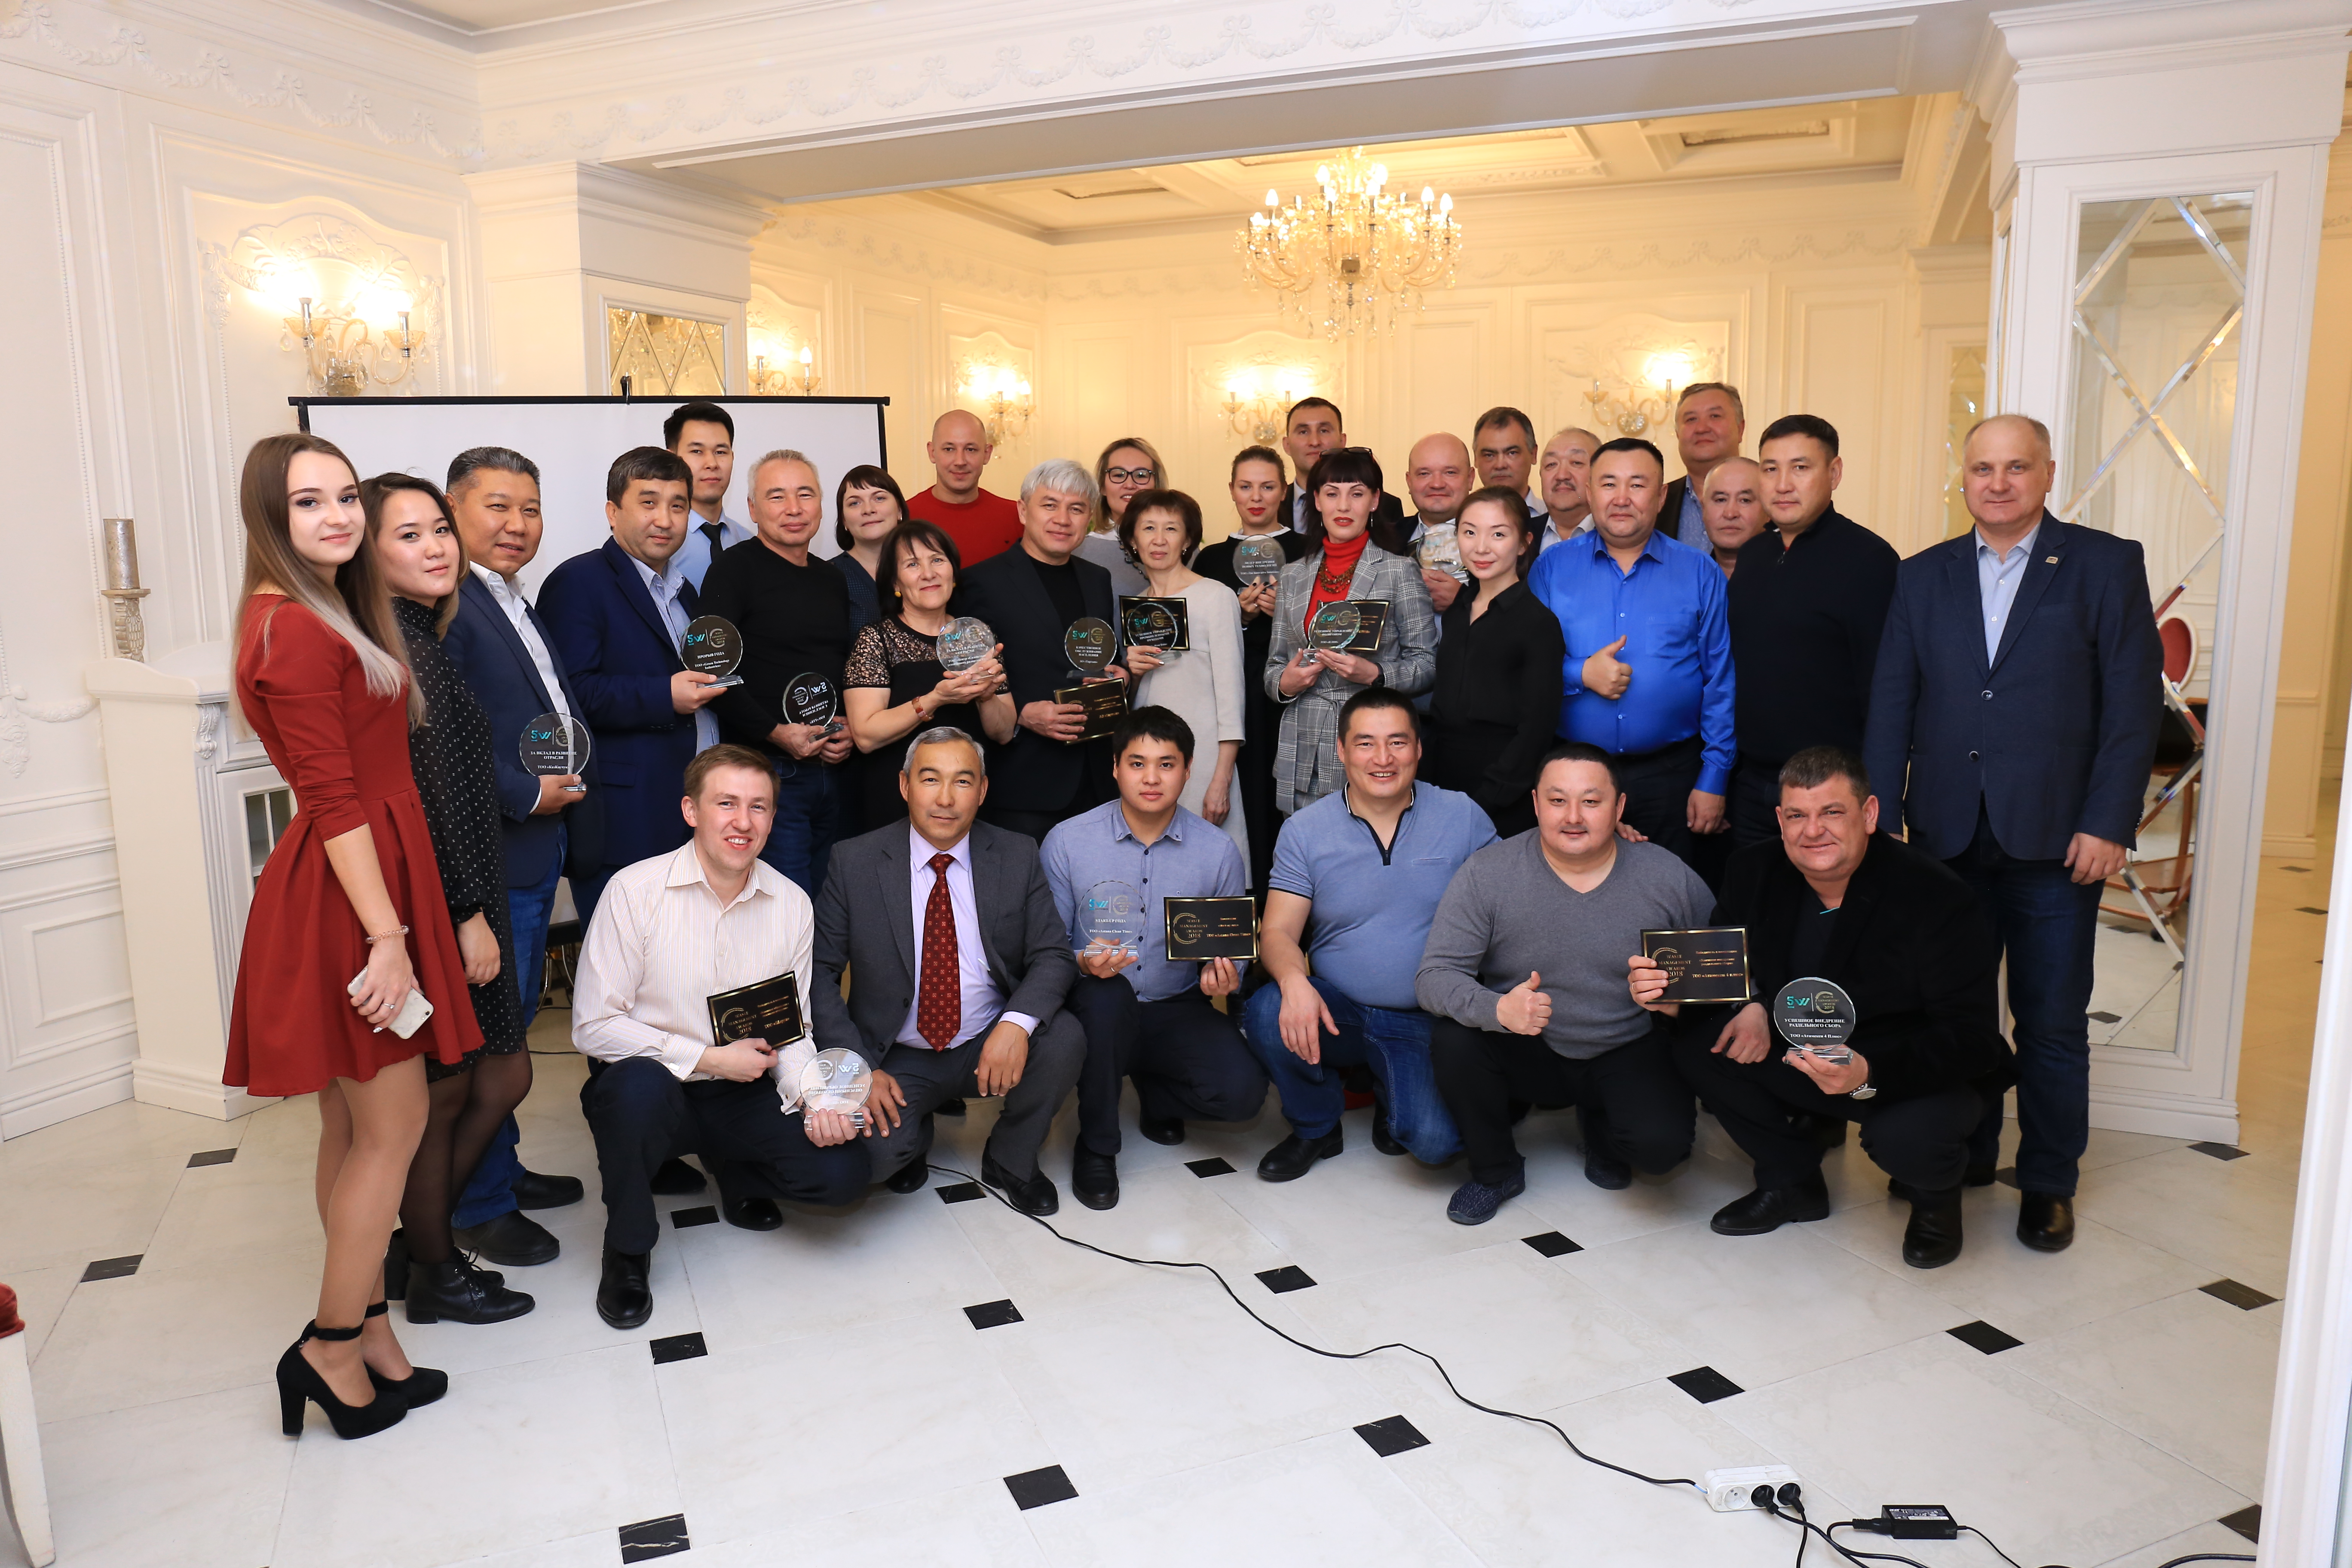 Waste Management Awards 2018 - первая премия в области управления отходами в Казахстане